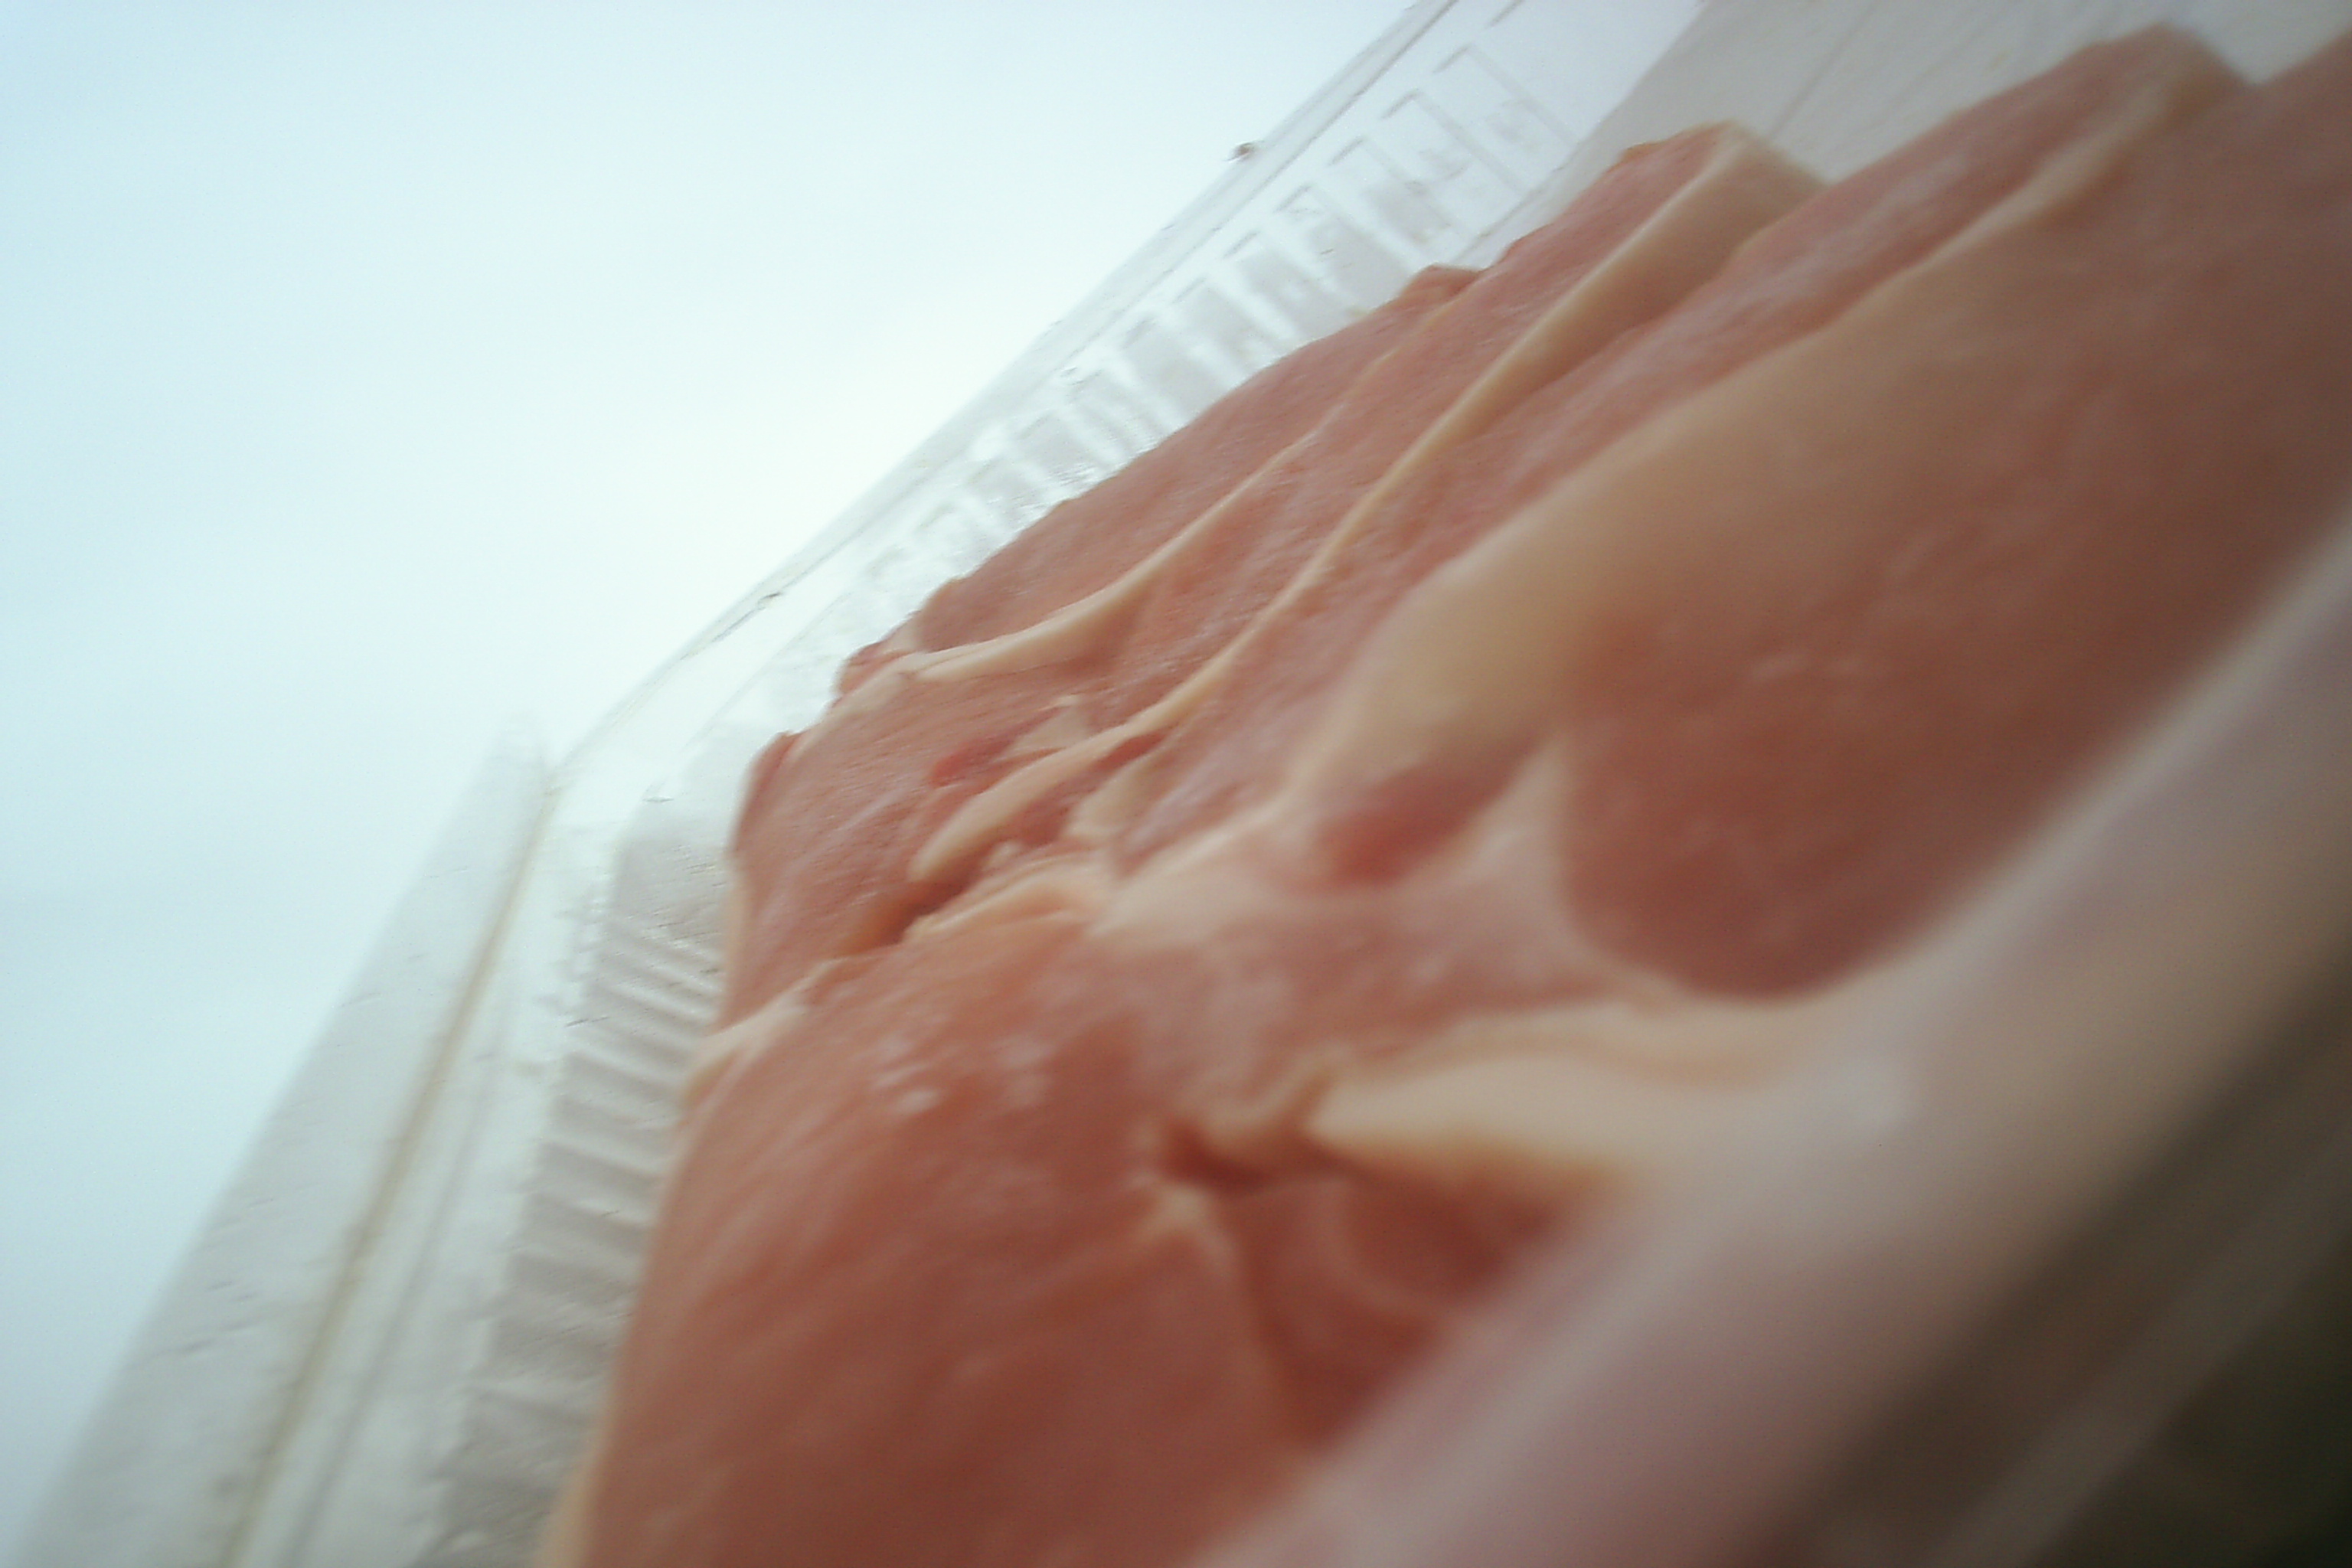 Meat & Meat Packaging 10 - Pork Chops